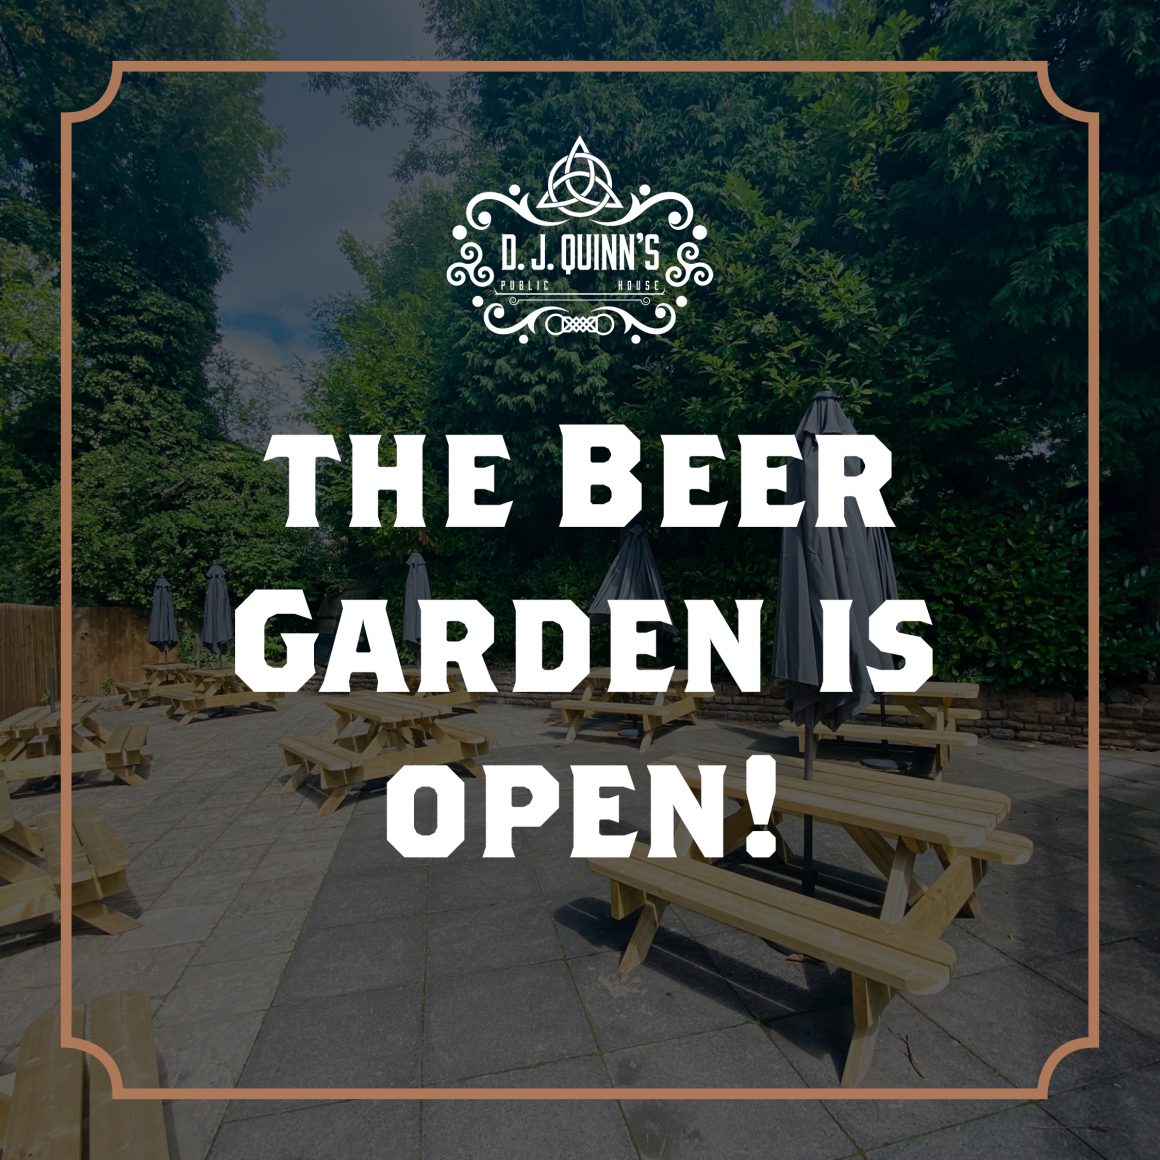 The Beer Garden Is Open!